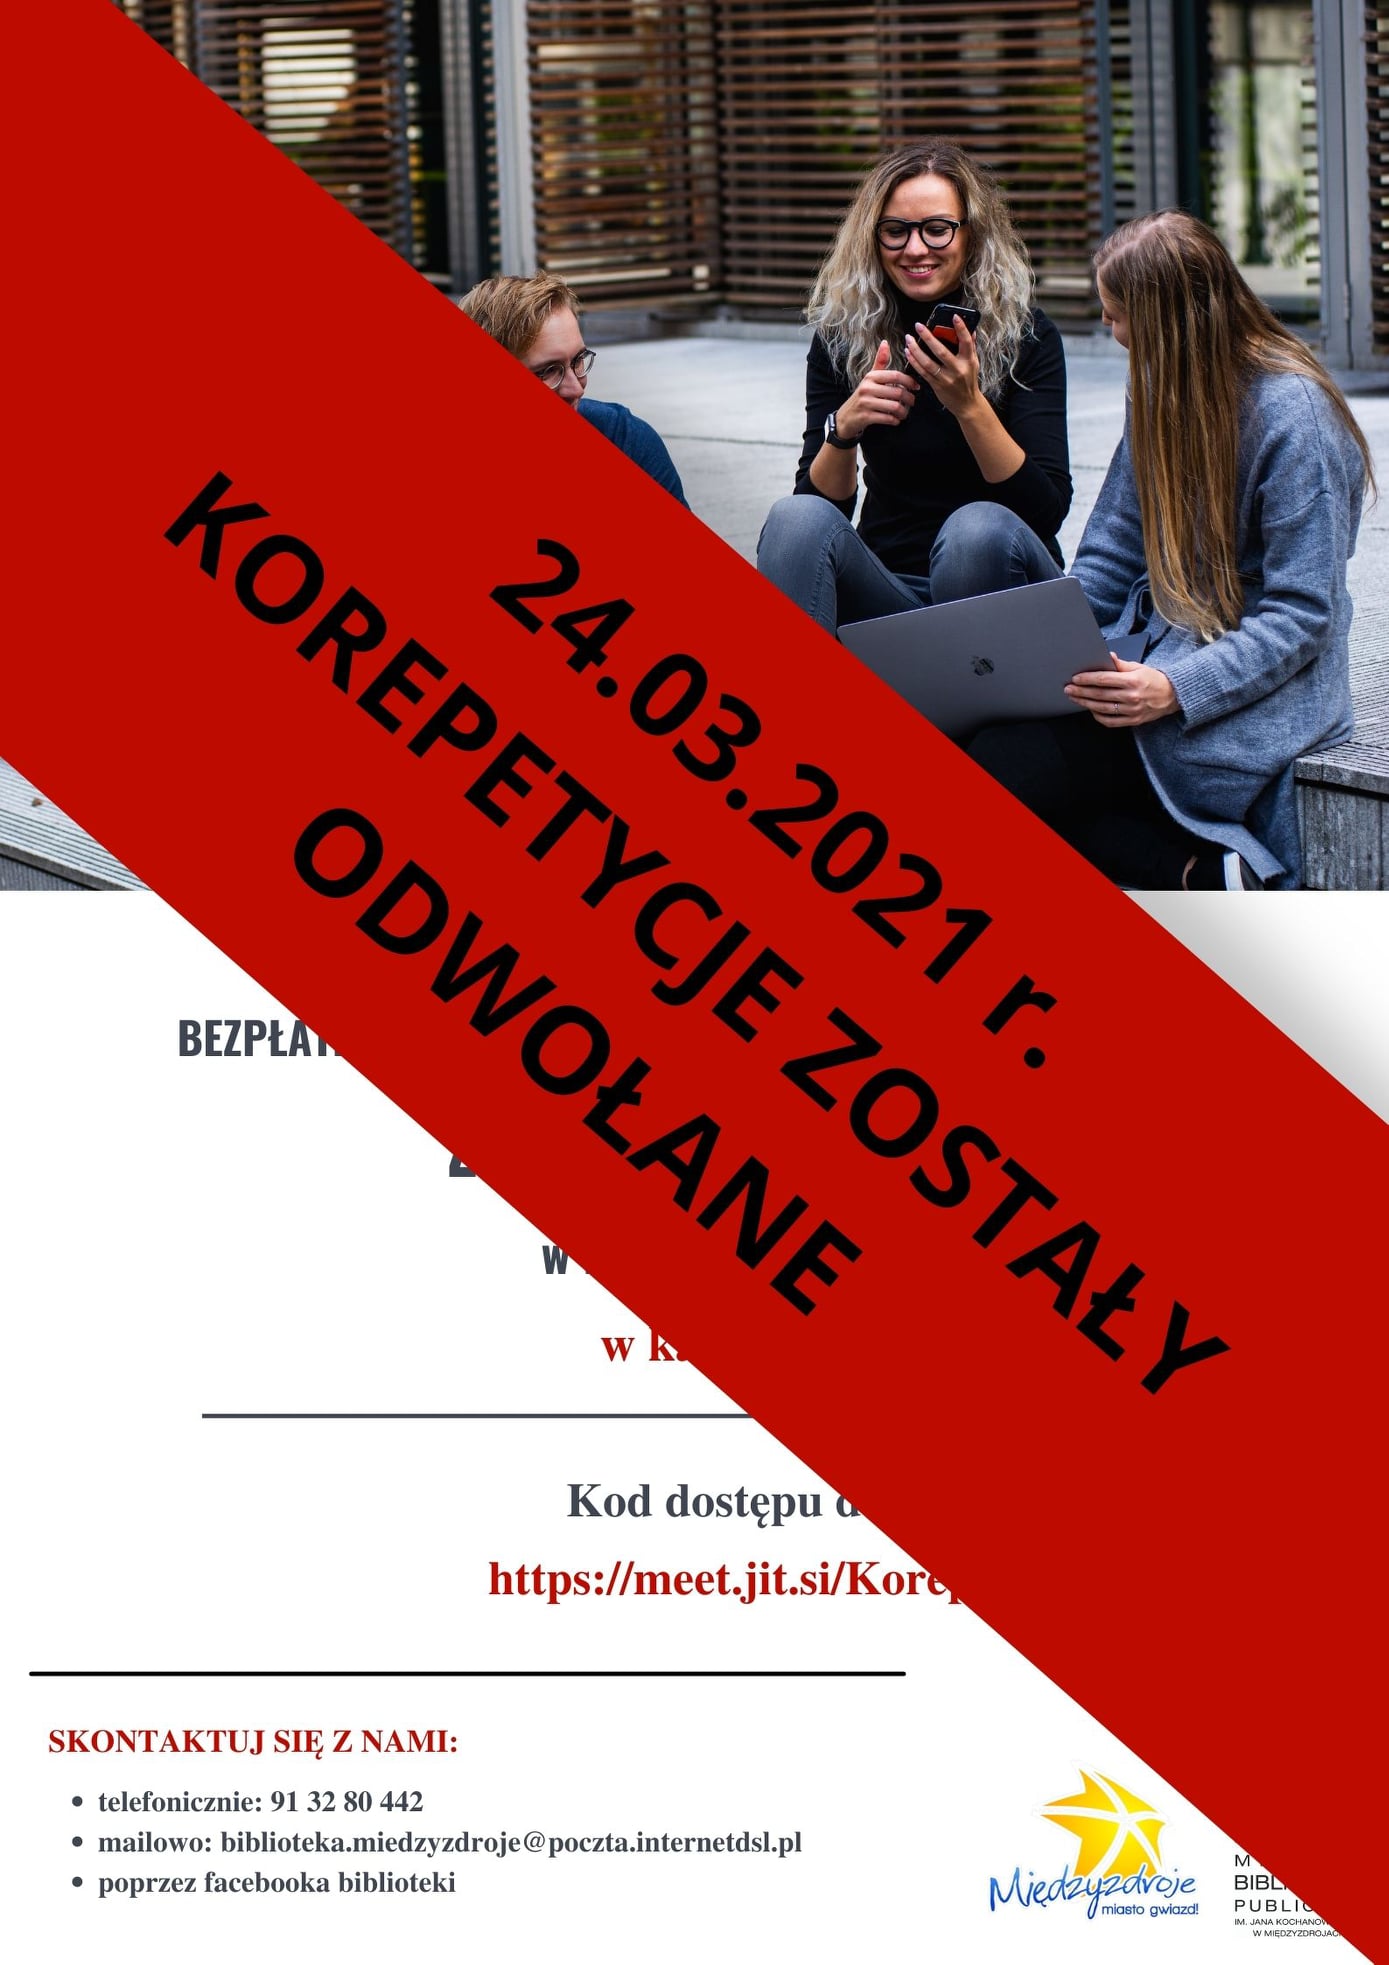 Dnia 24.03.2021 r. bezpłatne korepetycje online z języka polskiego zostały odwołane!